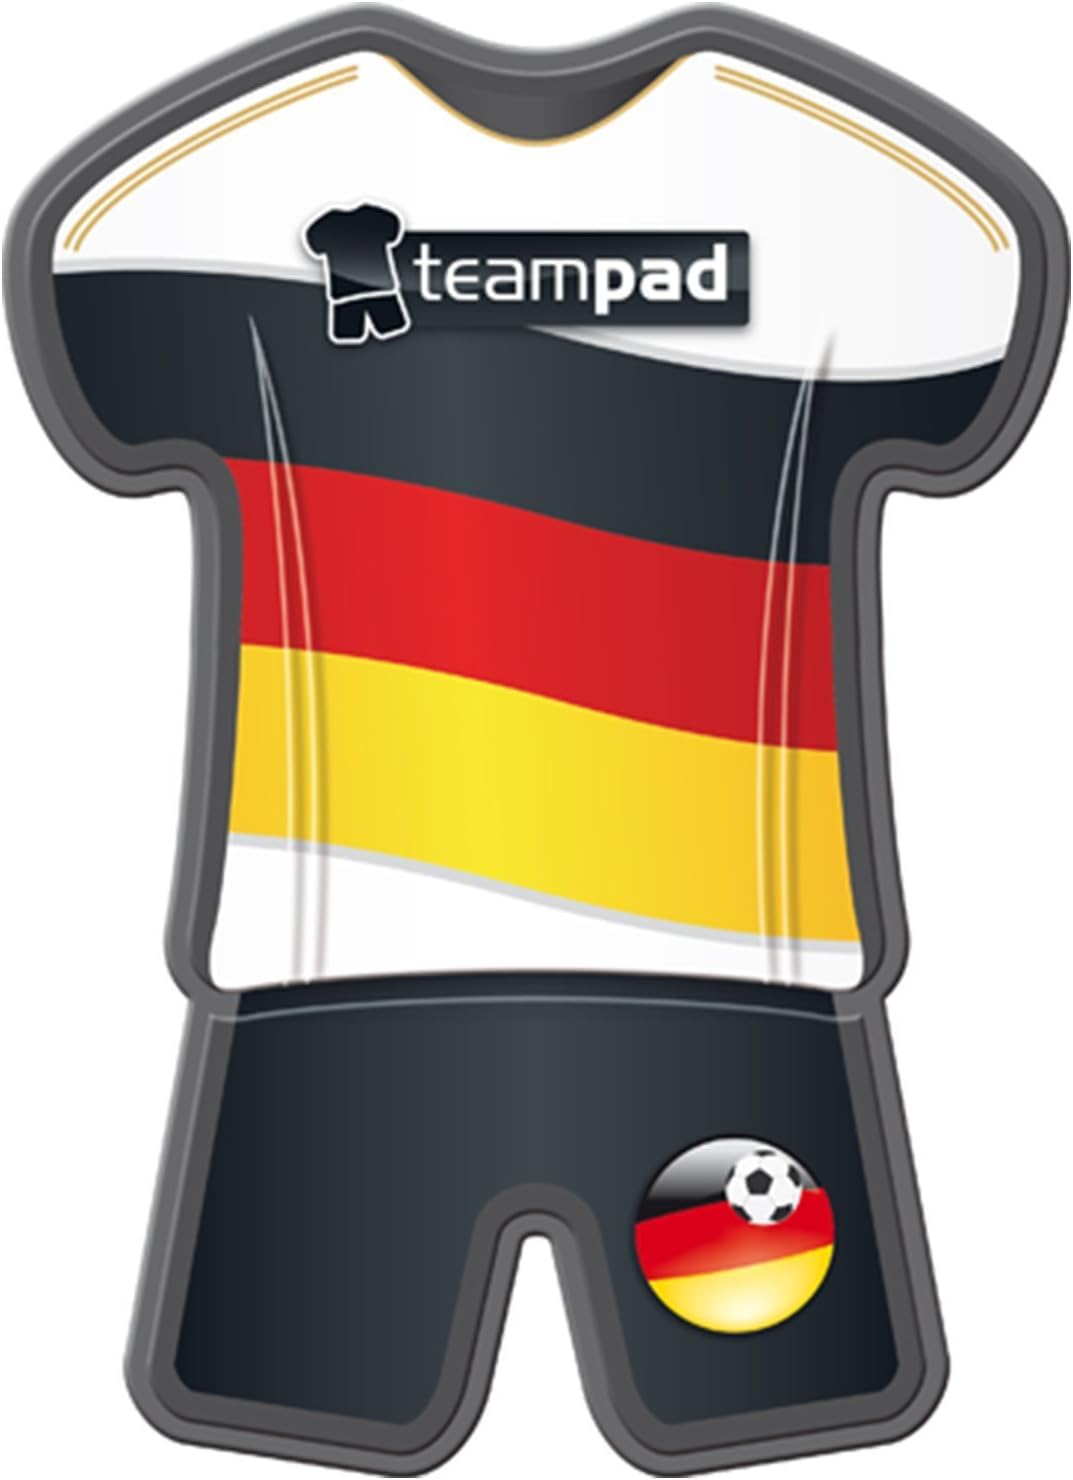 Antirutschpad im Deutschland Trikot-Design von Teampad - Autohalterung für Handys & Navi im Trikot Style, für die Fußball EM, wasserfeste Unterlage ohne Klebstoff von Chinchilla